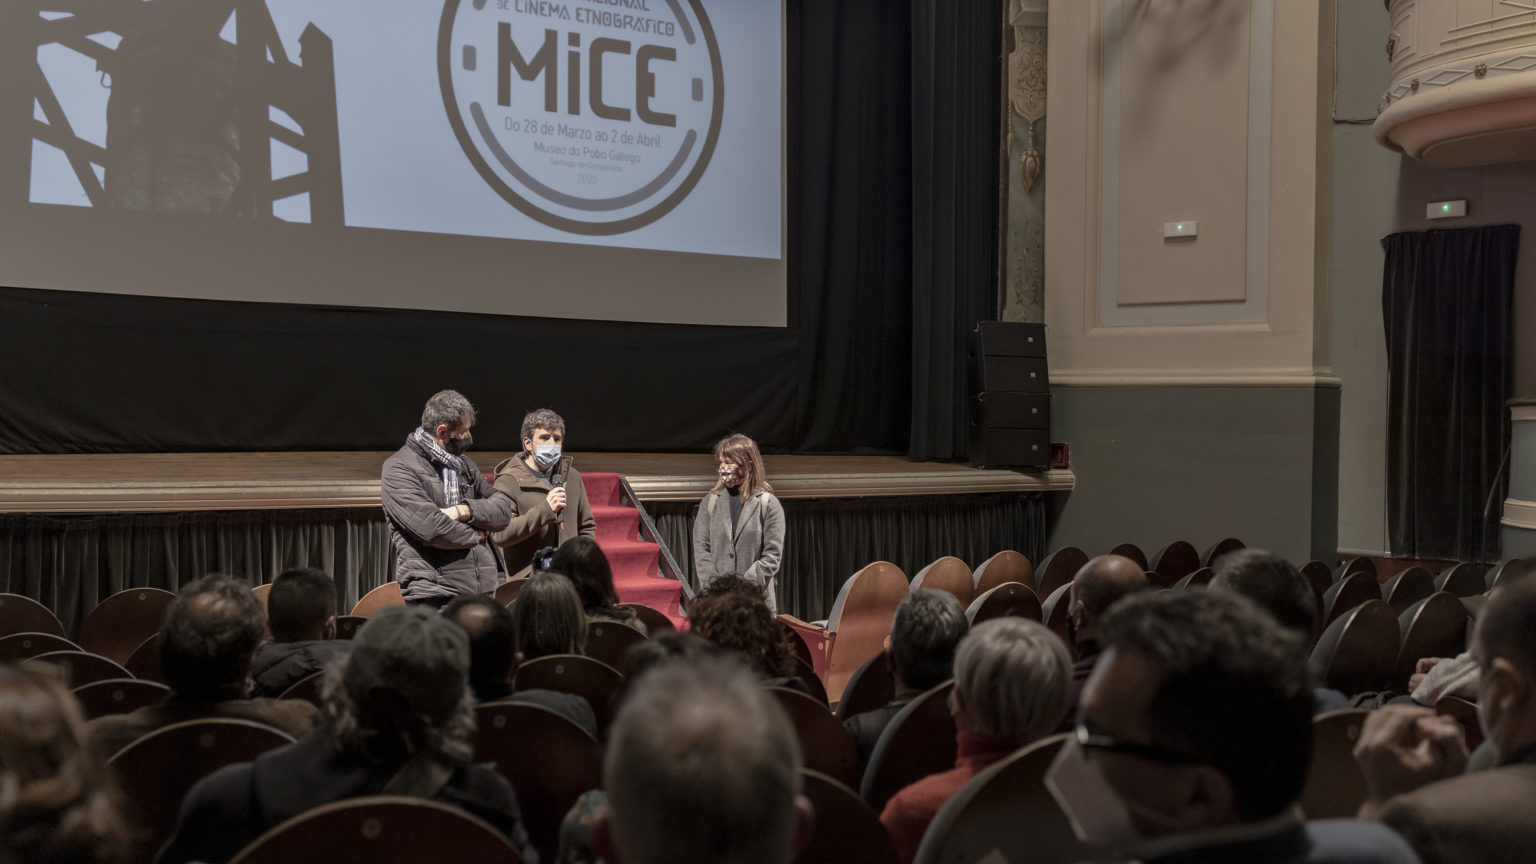 MICE Mostra Internacional de Cinema Etnográfico
